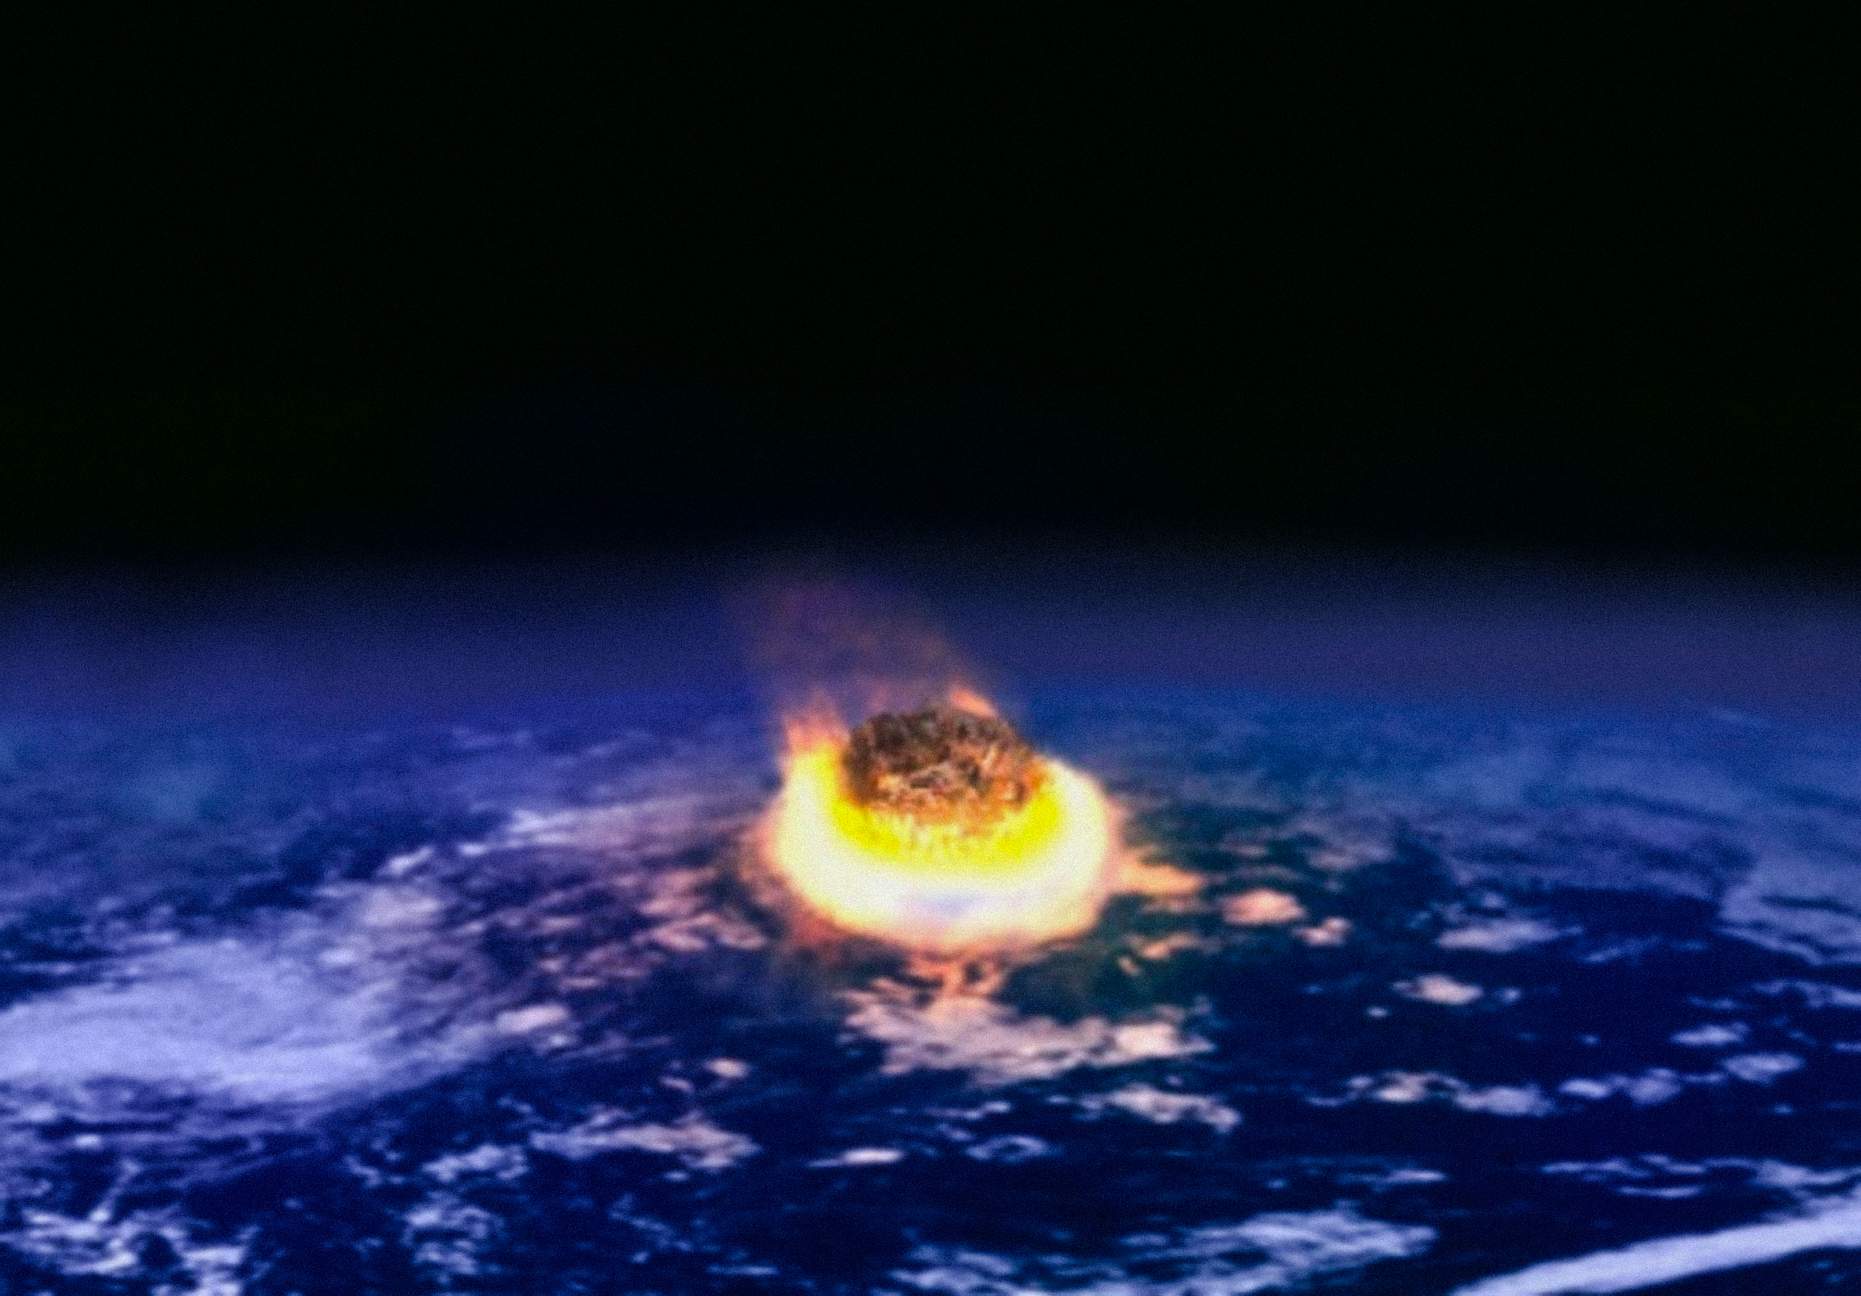 Per Zoltan Galántai, una scala per classificare le civiltà dovrebbe basarsi sulla loro capacità di sopravvivere alle catastrofi, in particolare a quelle di origine cosmica, come l’impatto di un asteroide.